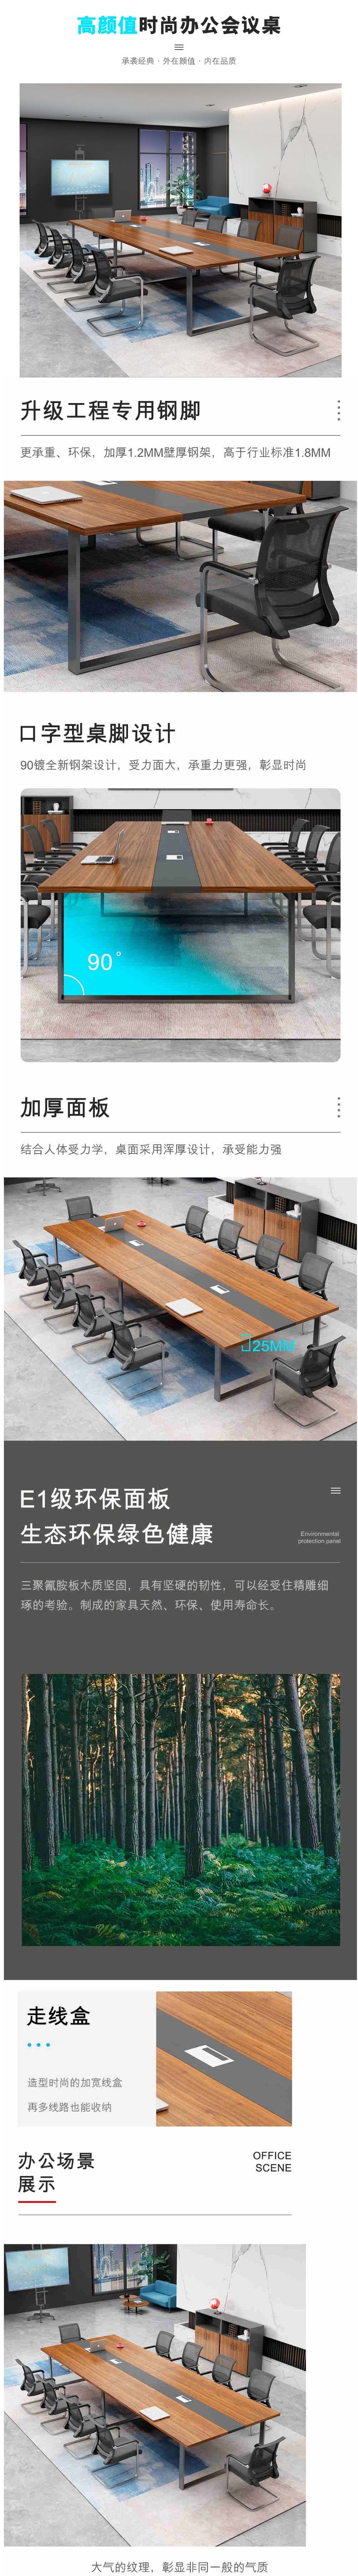 华信会议桌含椅.jpg